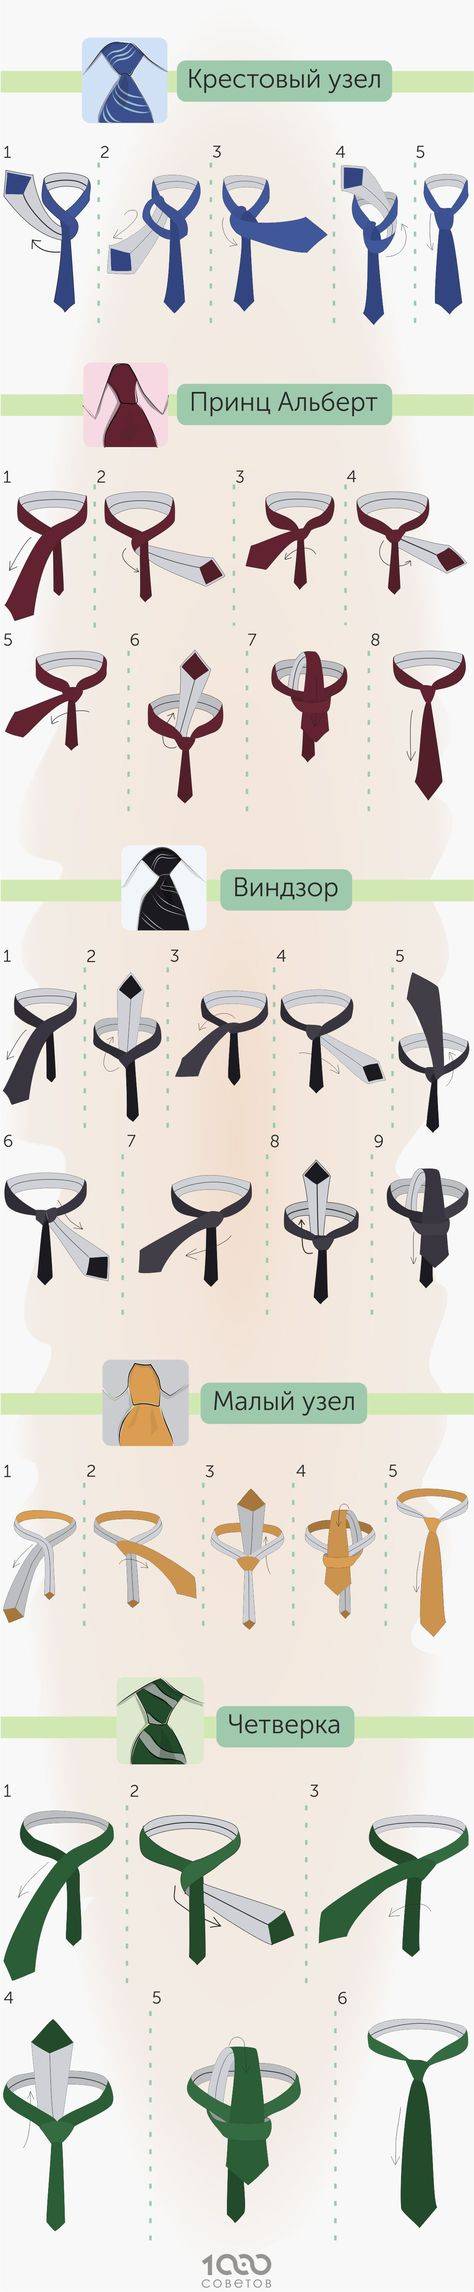 Как носить зажим для галстука